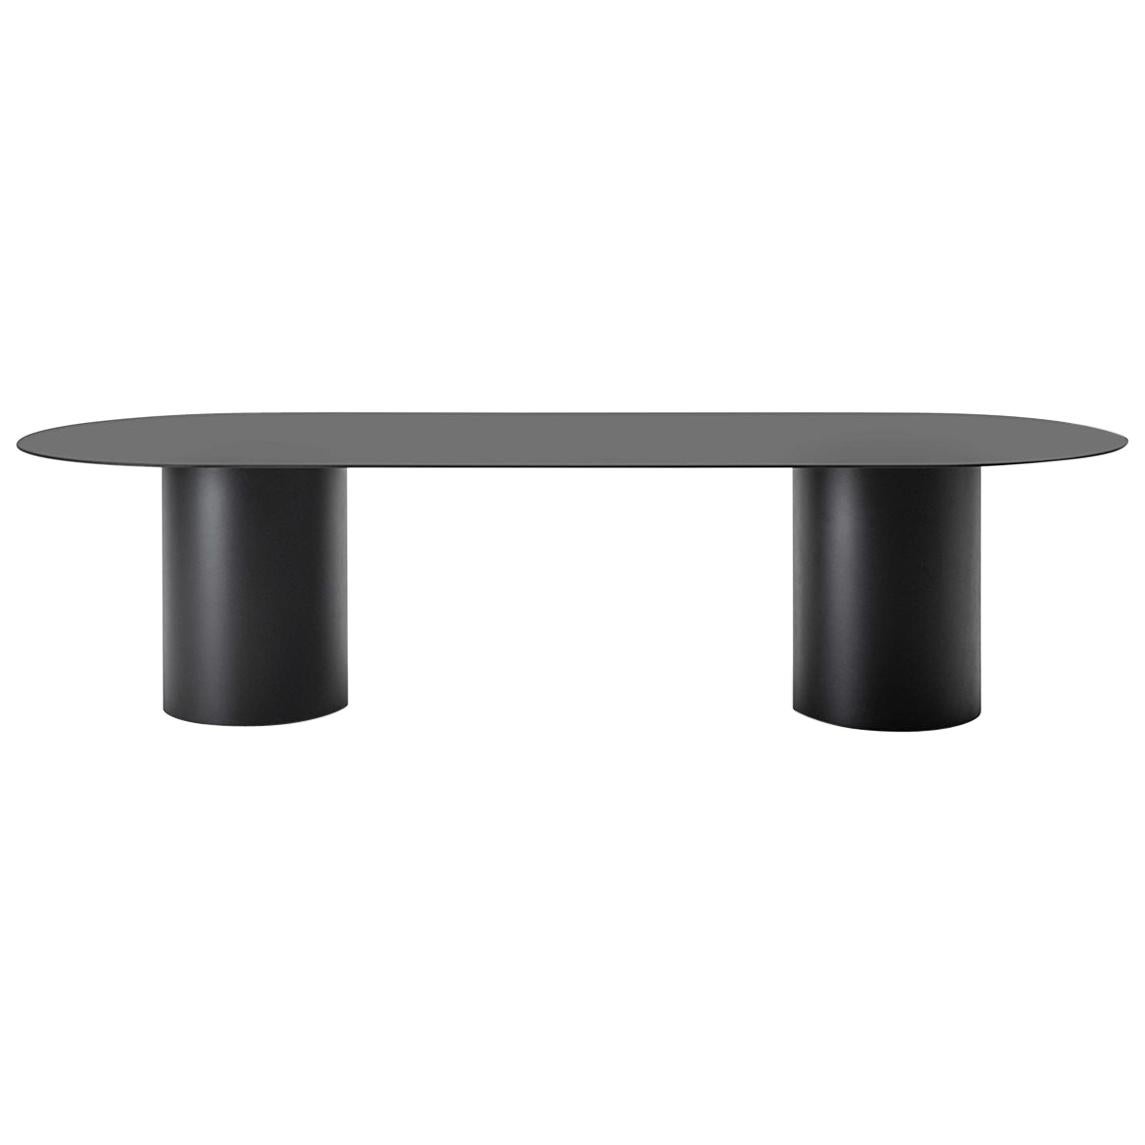 Desalto MM8 Table Designed by Guglielmo Poletti